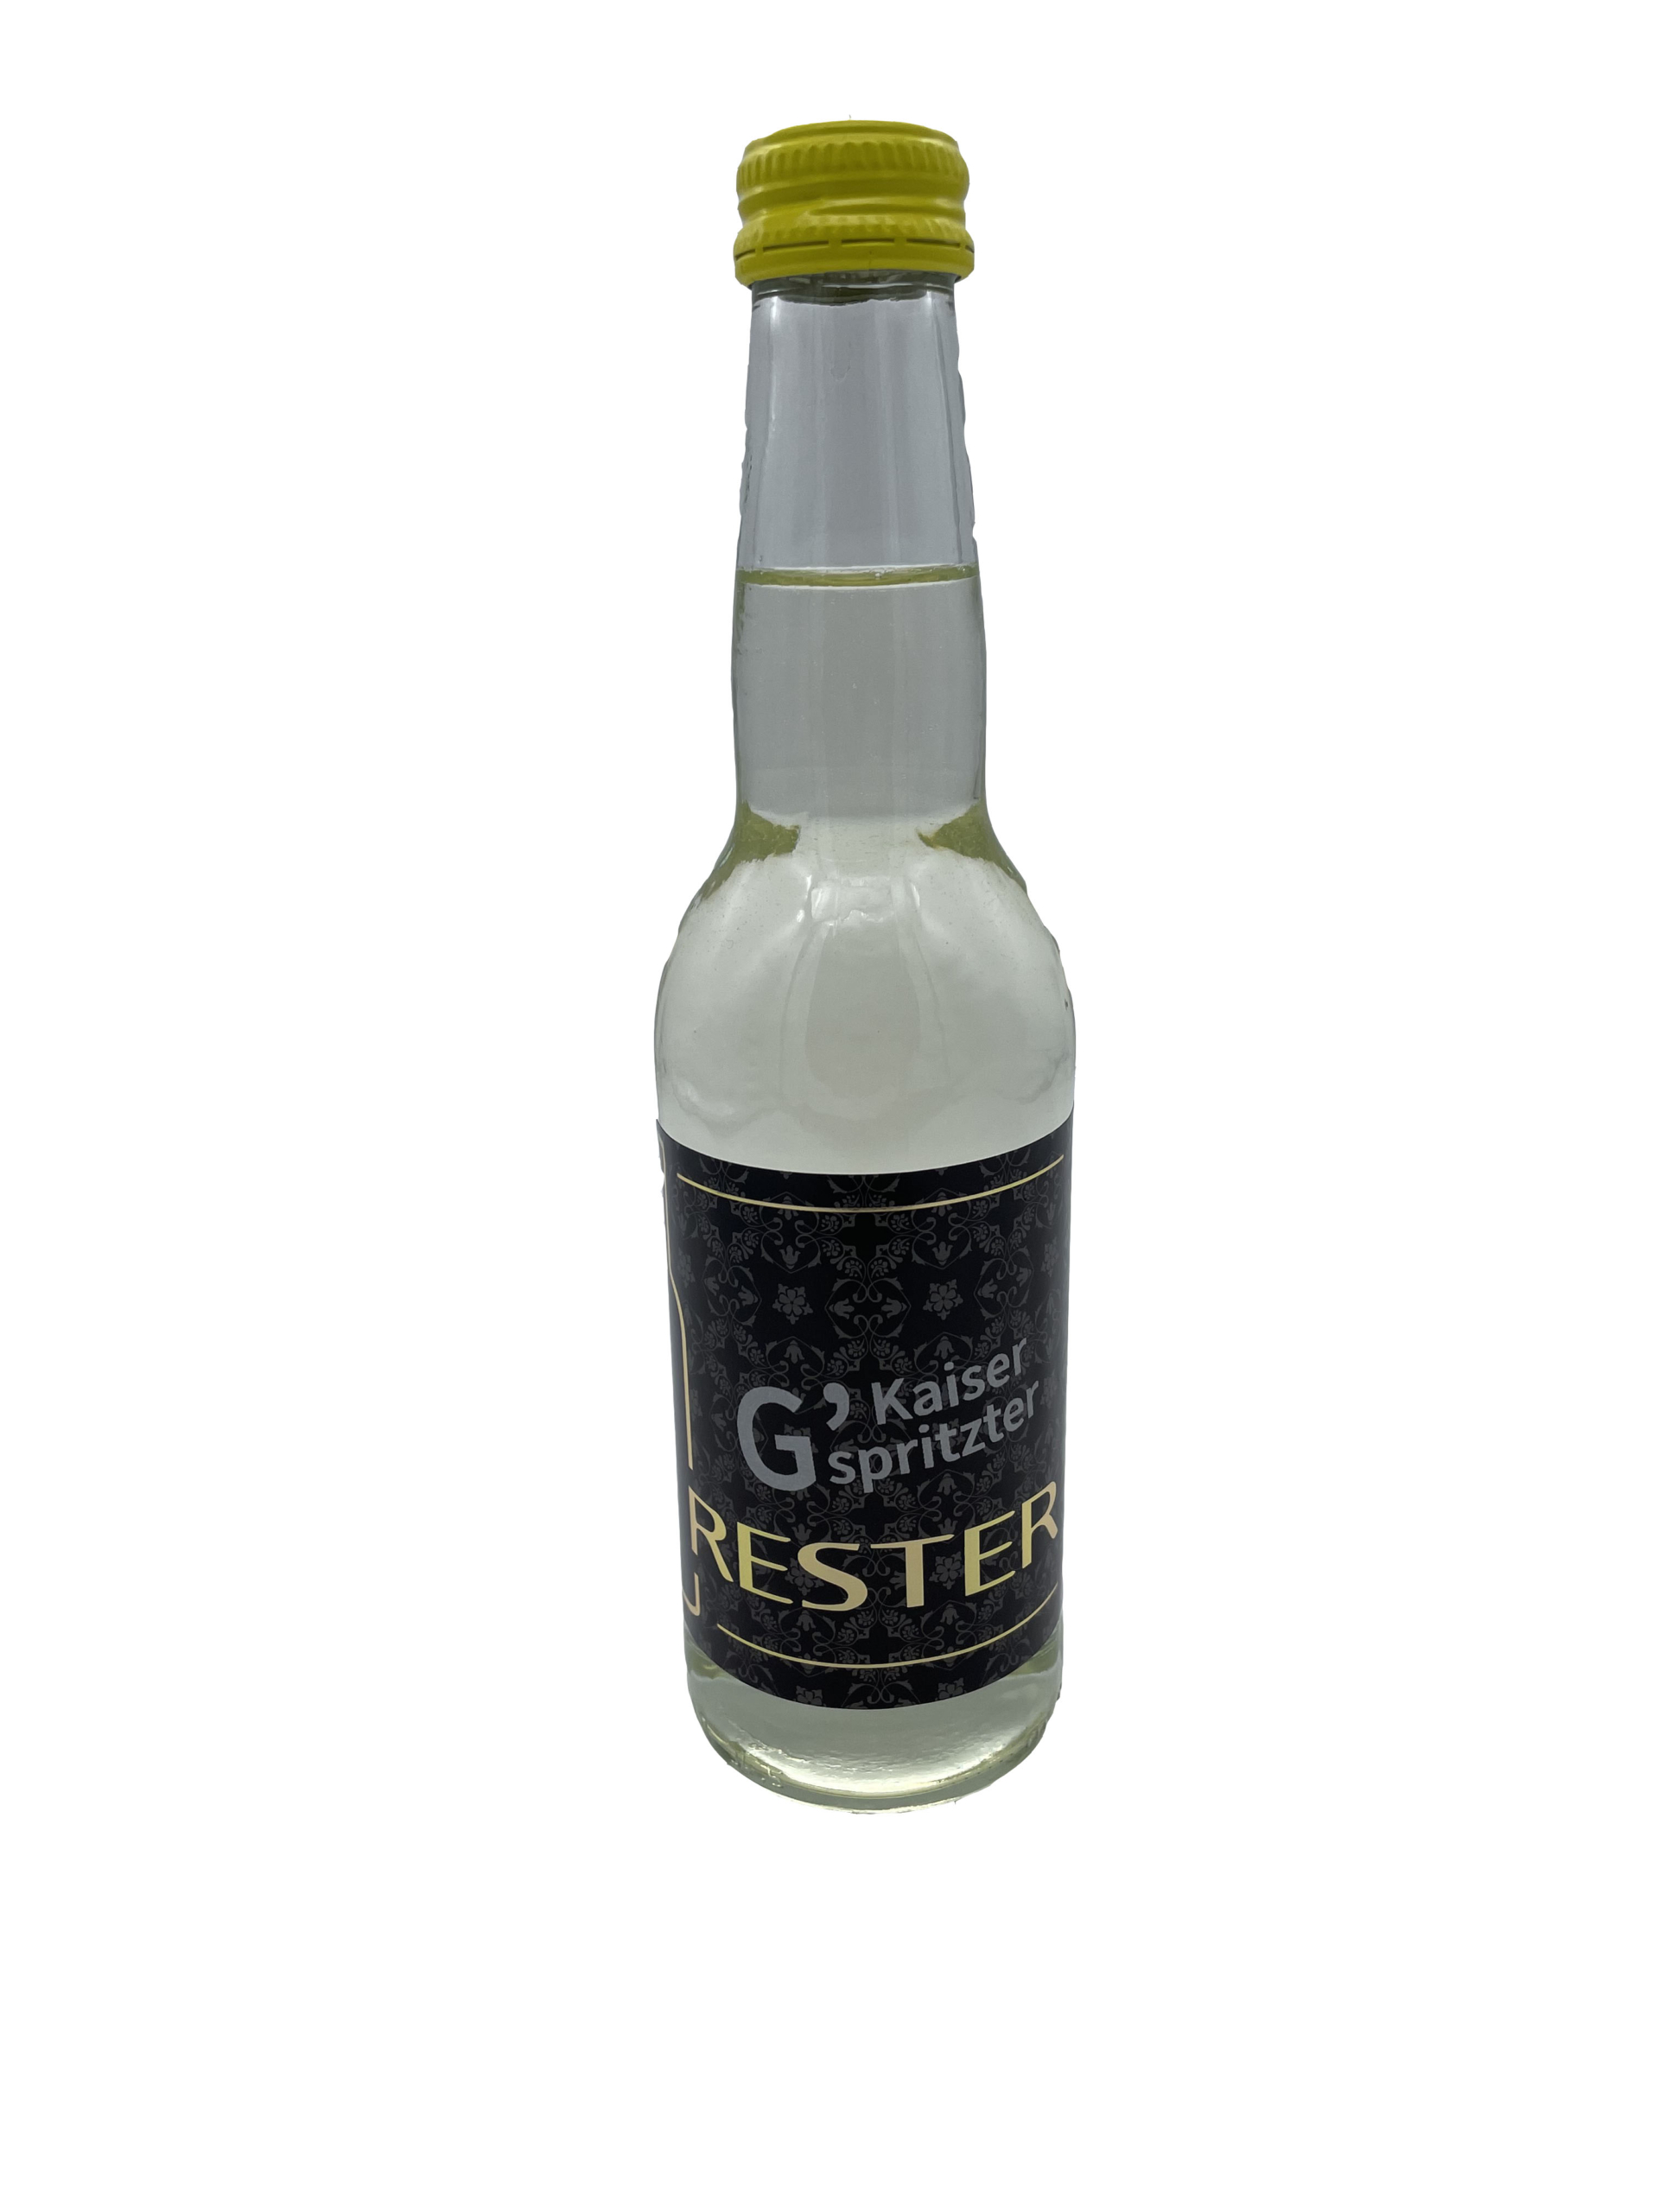 Kaiser G`spritzter – Weinbau Rester